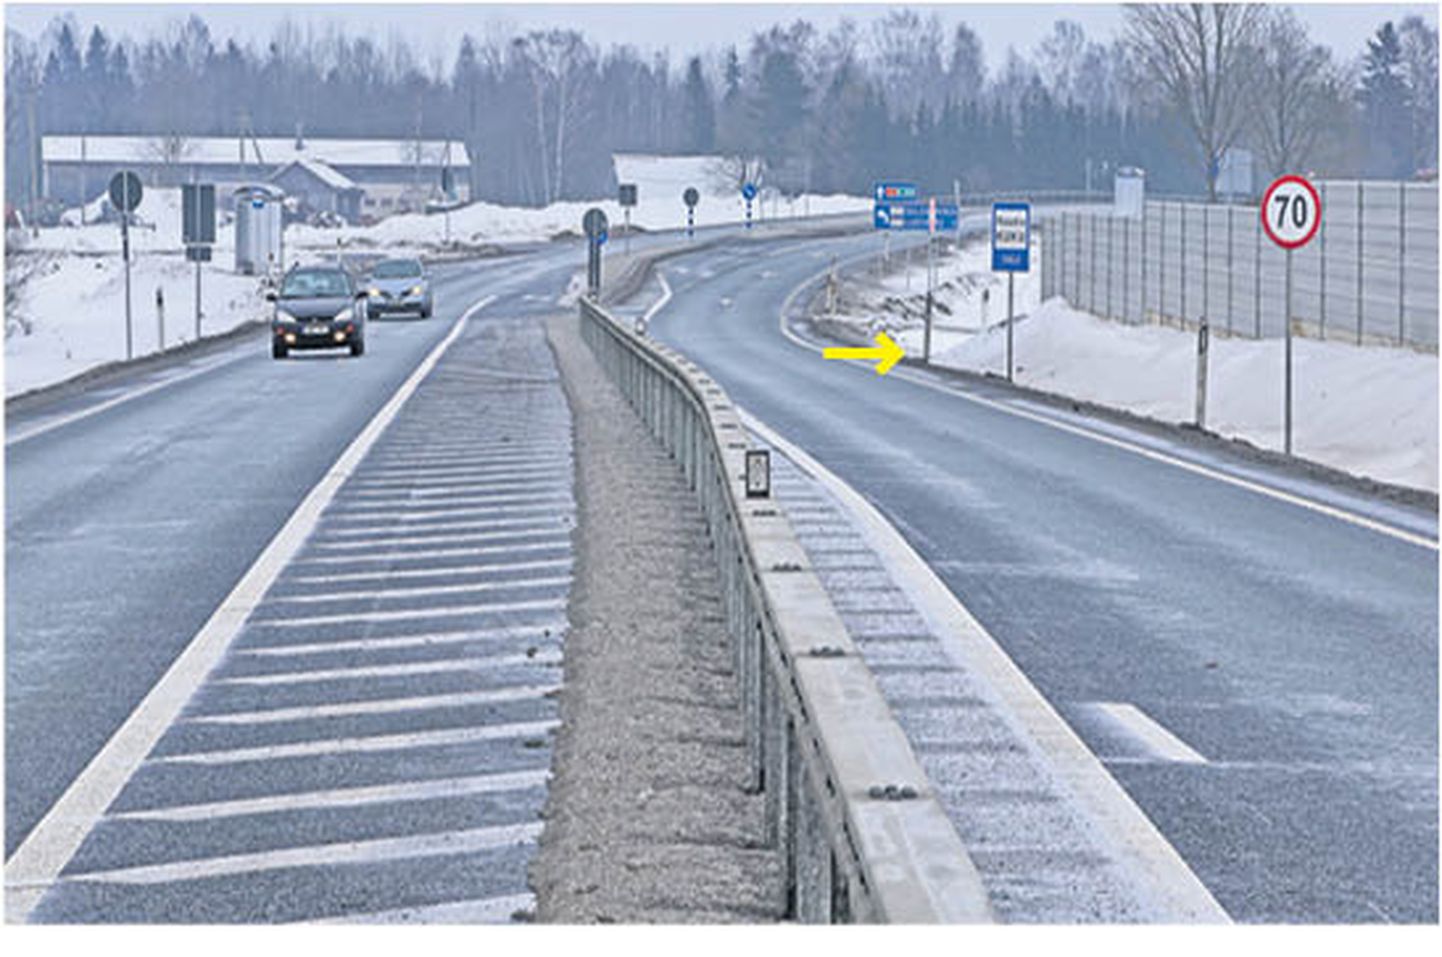 Tallinna-Tartu maanteel möödasõiduala lõpus müraseina varju jääva külatee ots on osutatud kollase noolega. Peateele sõitjat hoiatab stoppmärk, peateel sõitjale on hoiatuseks kiiruspiirang 70.